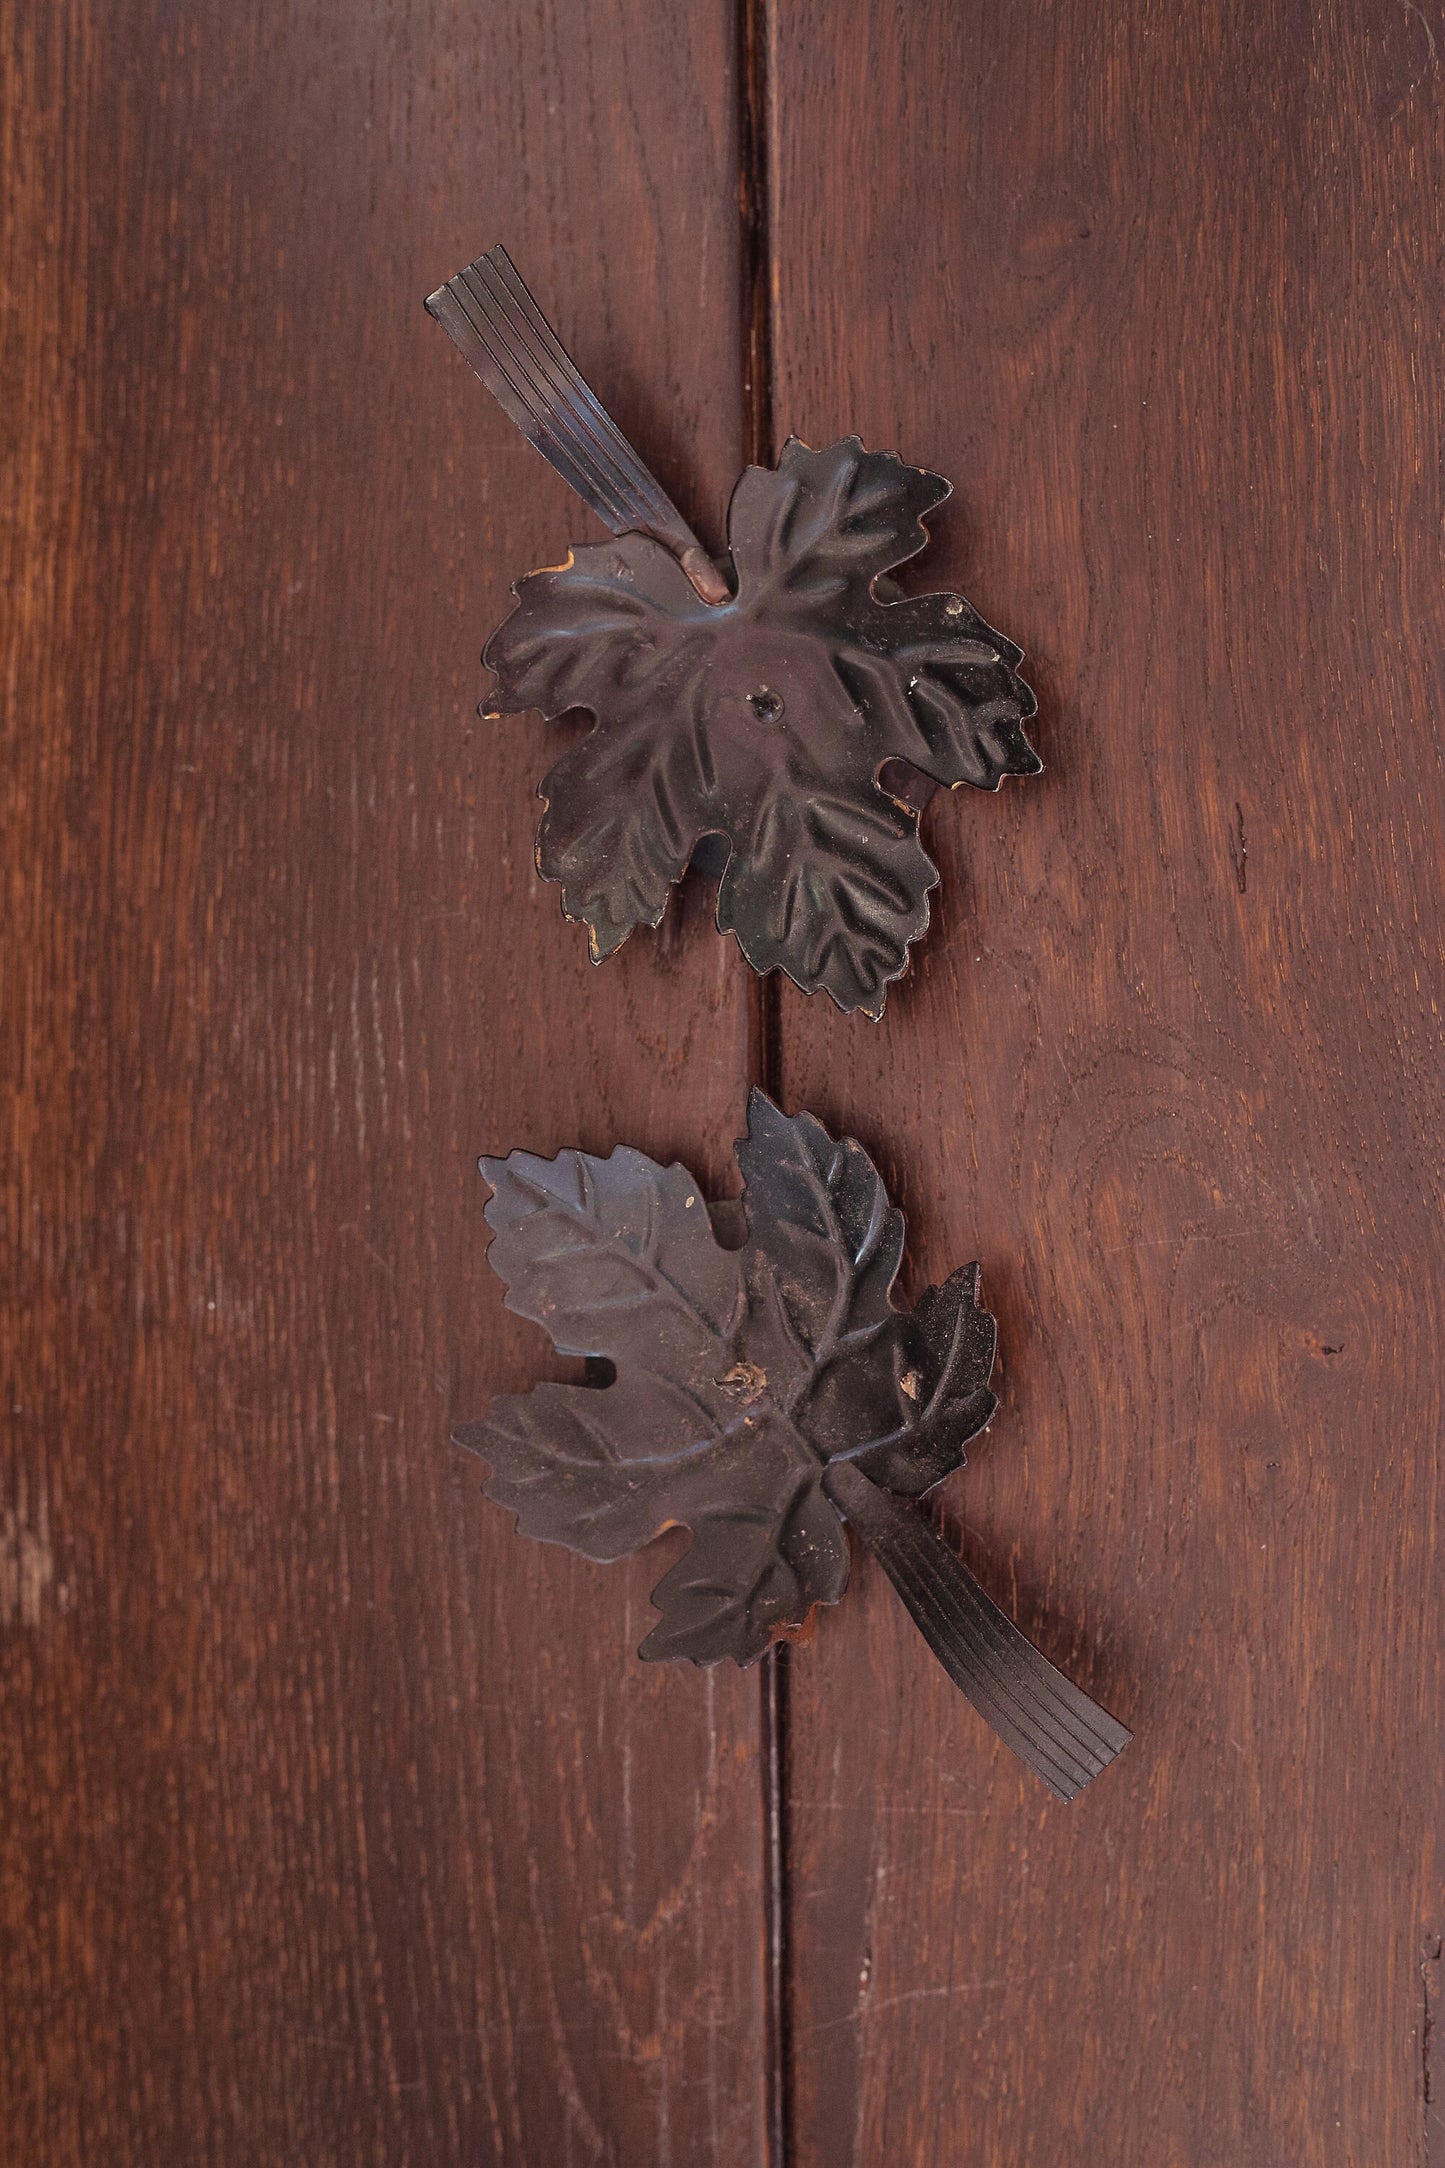 Black Metal Leaf Shaped Candlestick Holder - Vintage Maple Leaf Candleholder with Handle